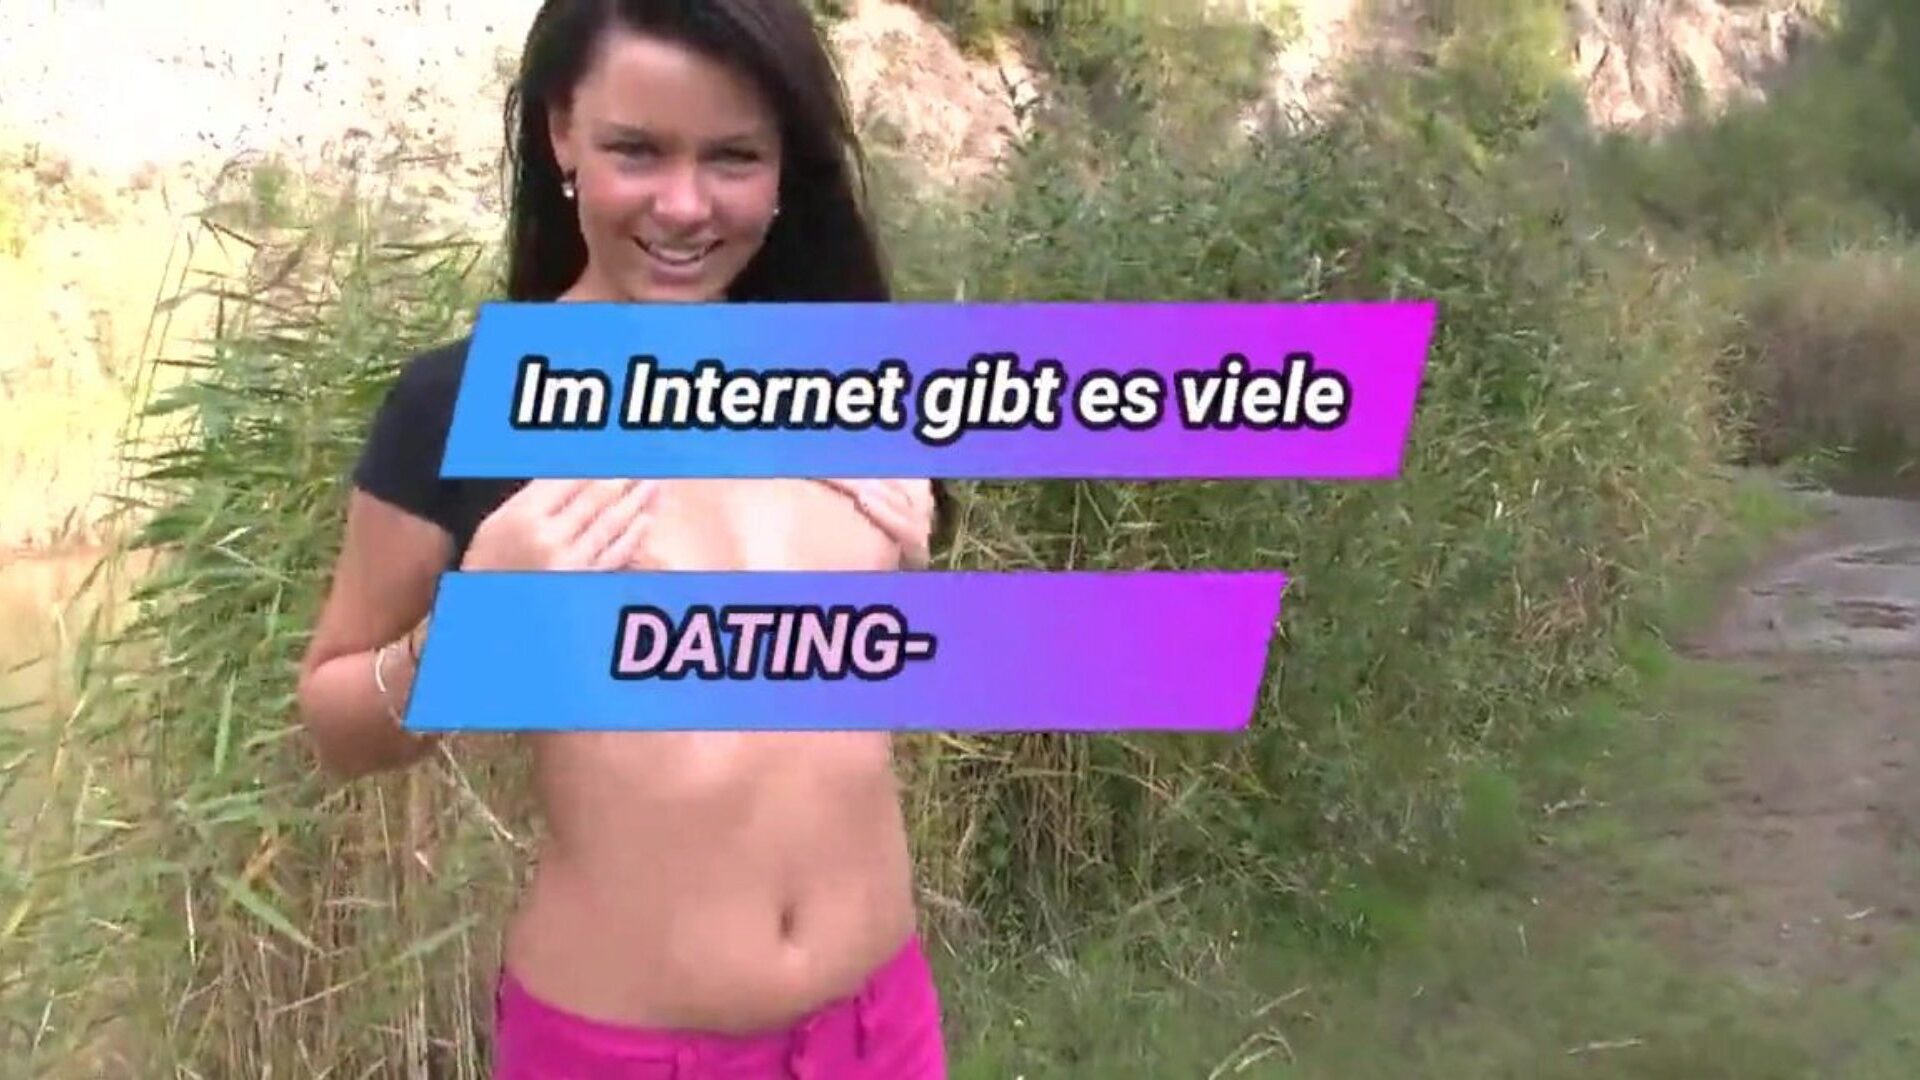 немецкий подросток открытый ректальный секс - около озера немецкий подросток совершеннолетия открытый ректальный секс - около озера